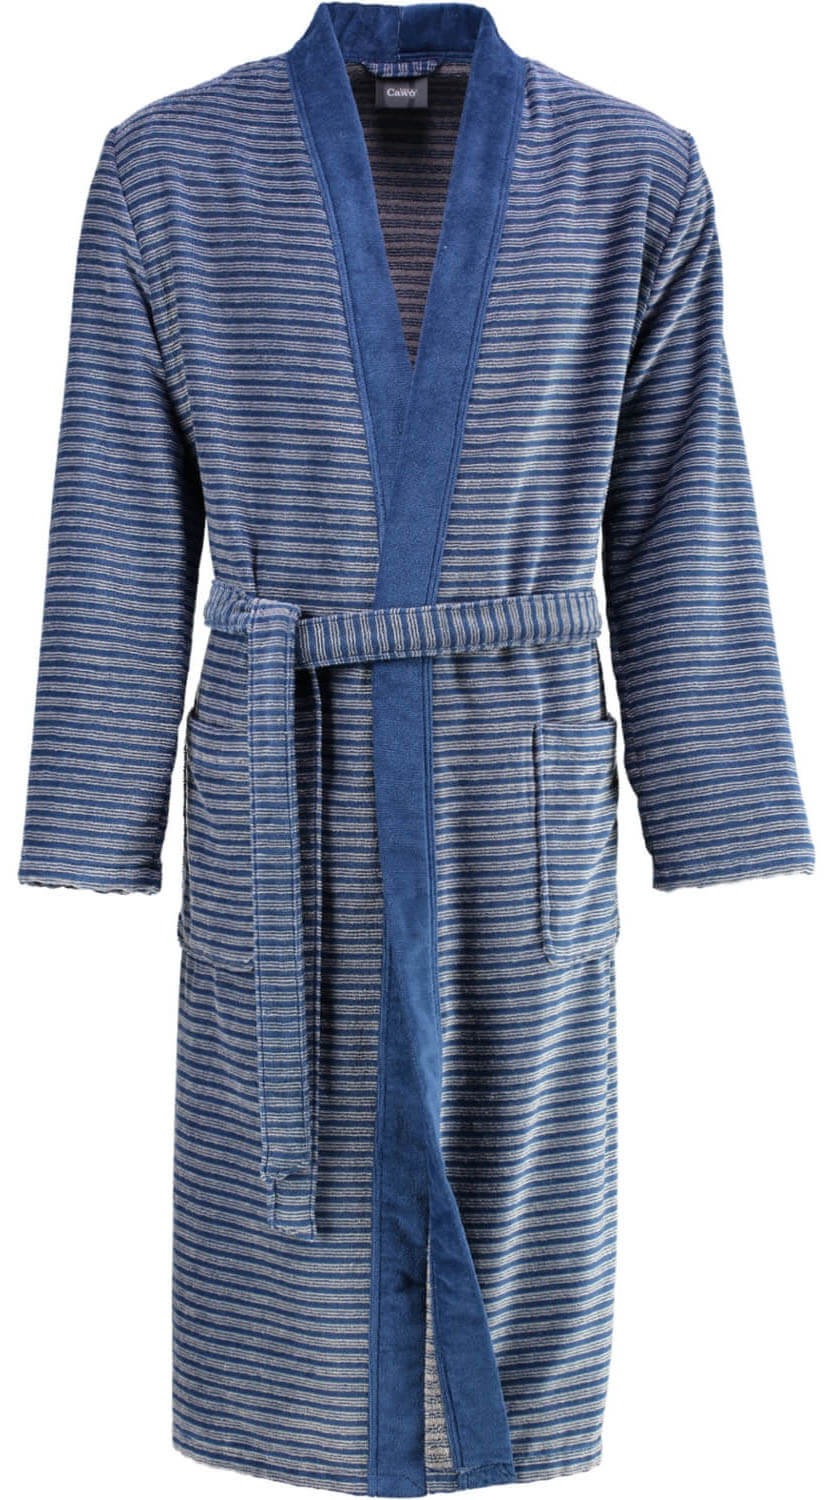 Мужской халат Cawo Kimono Blau (2844) ☞ Размер: 52